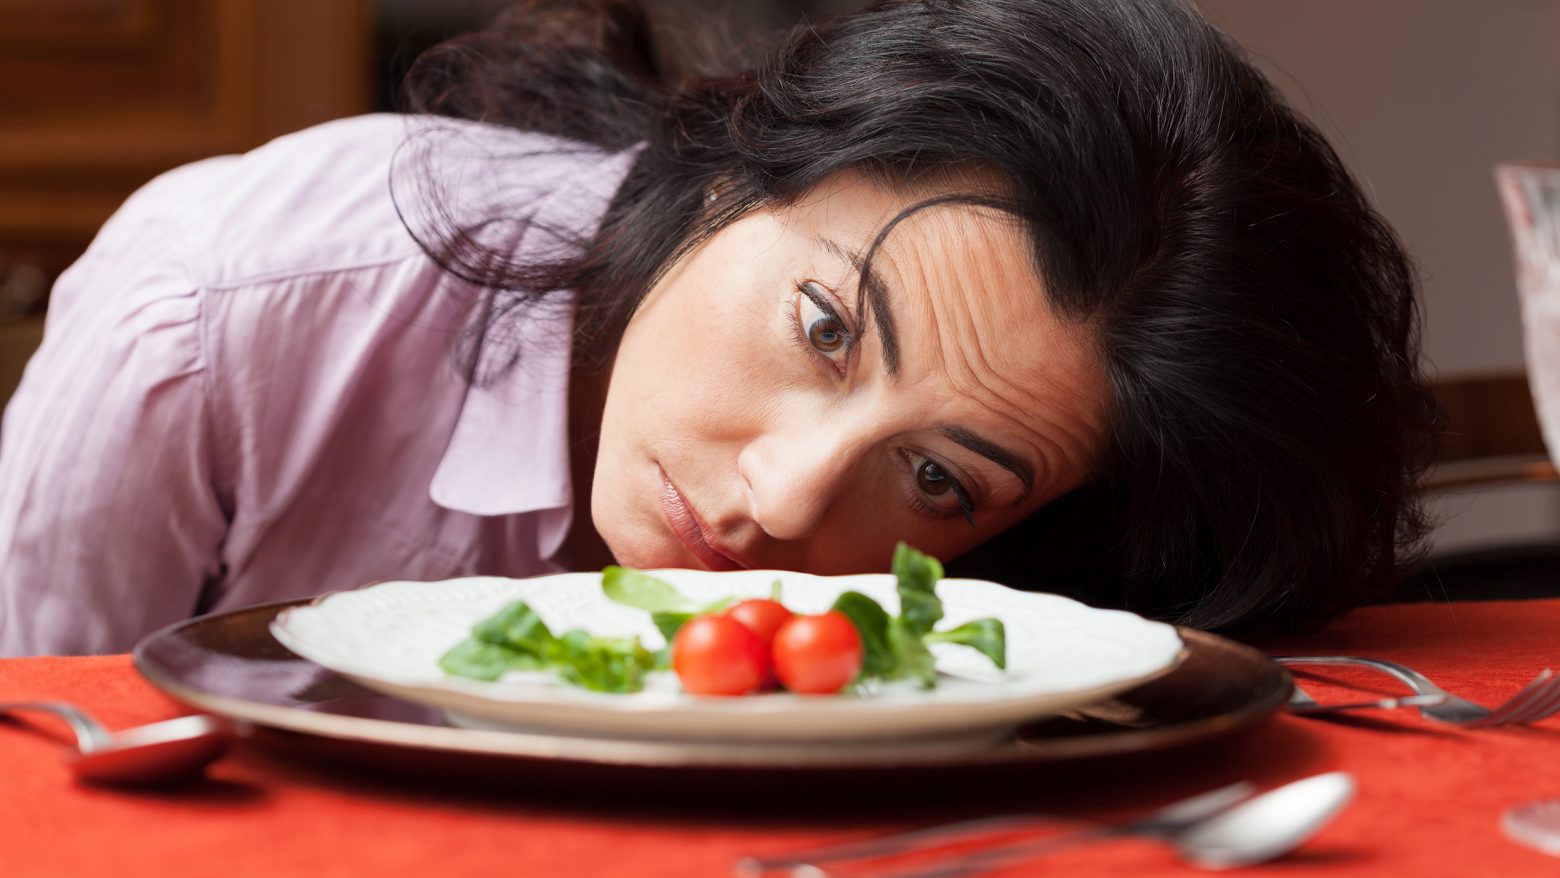 Δίαιτα: Αυτή είναι η χειρότερη συμβουλή για αδυνάτισμα - Χρησιμοποιείται πολύ συχνά